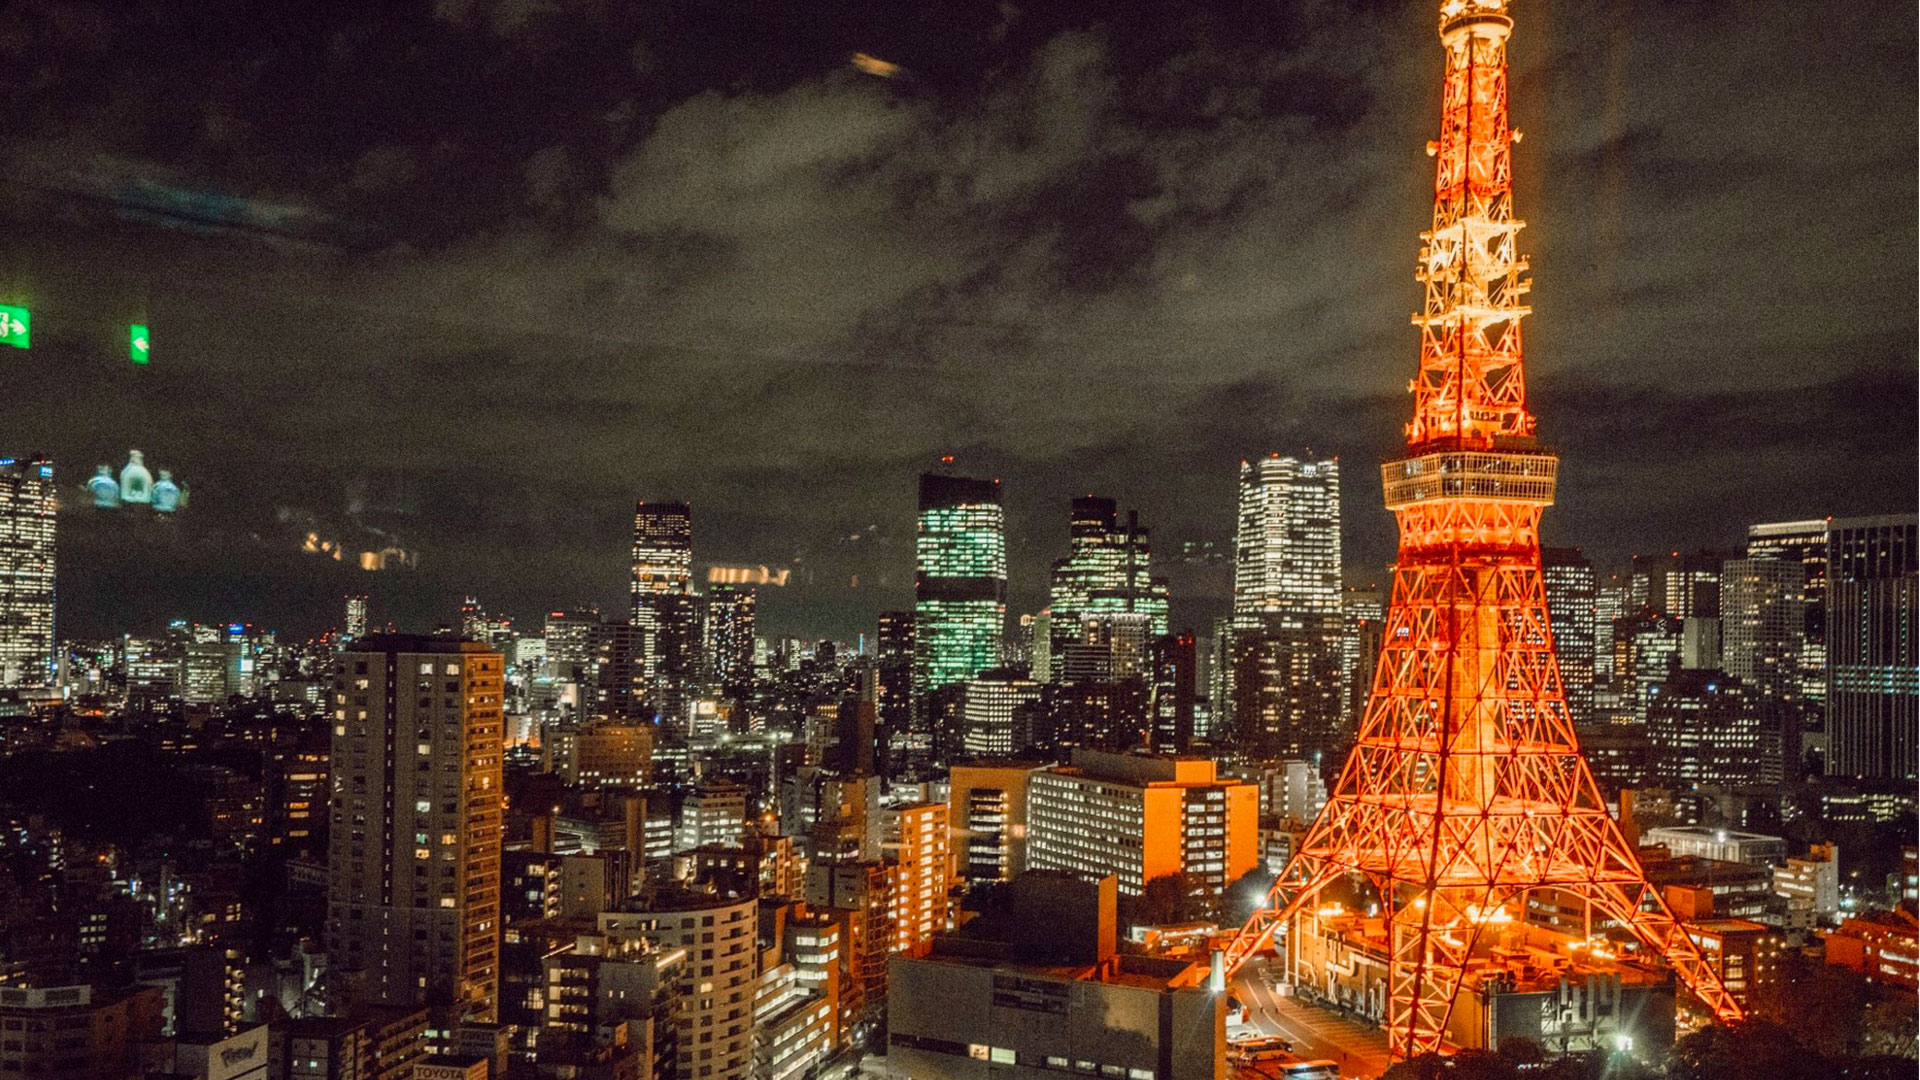 日本东京晴空塔(天空树) 4000×6016 - 免费可商用图片 - CC0素材网